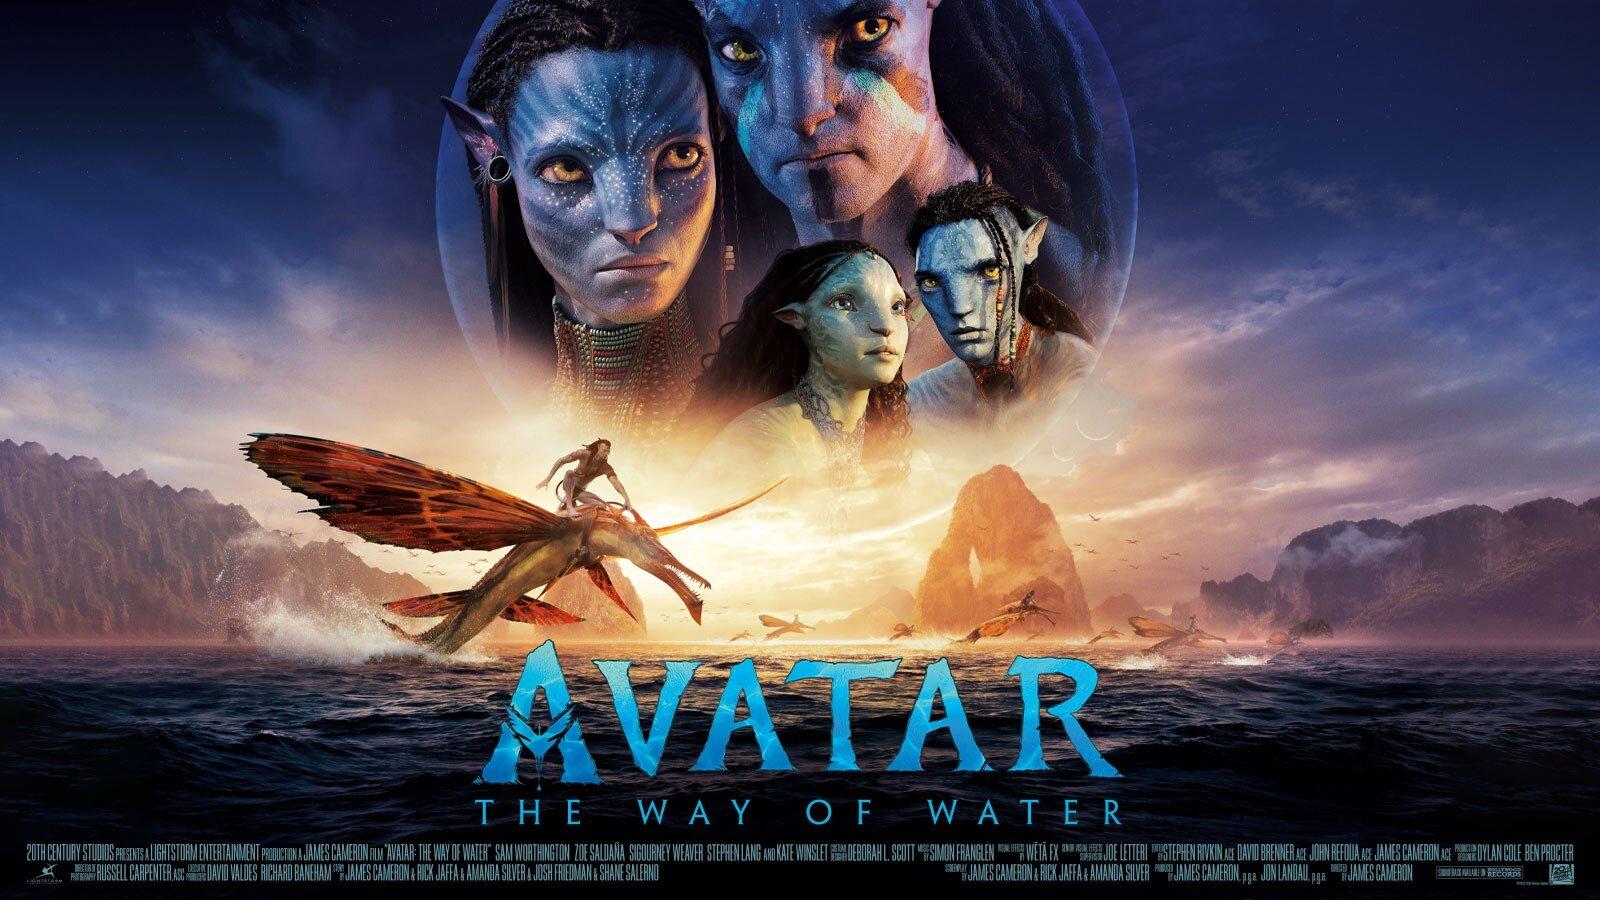 Avatar\' đang trở thành tên tuổi thống trị màn ảnh Bắc Mỹ hàng tuần trong vòng 4 tuần liên tiếp. Điều này cho thấy sức hút mạnh mẽ của bộ phim đến từ chất lượng diễn xuất, kỹ xảo đầy ấn tượng và nội dung độc đáo. Các tín đồ của Avatar có thể yên tâm với tương lai của loạt phim này.